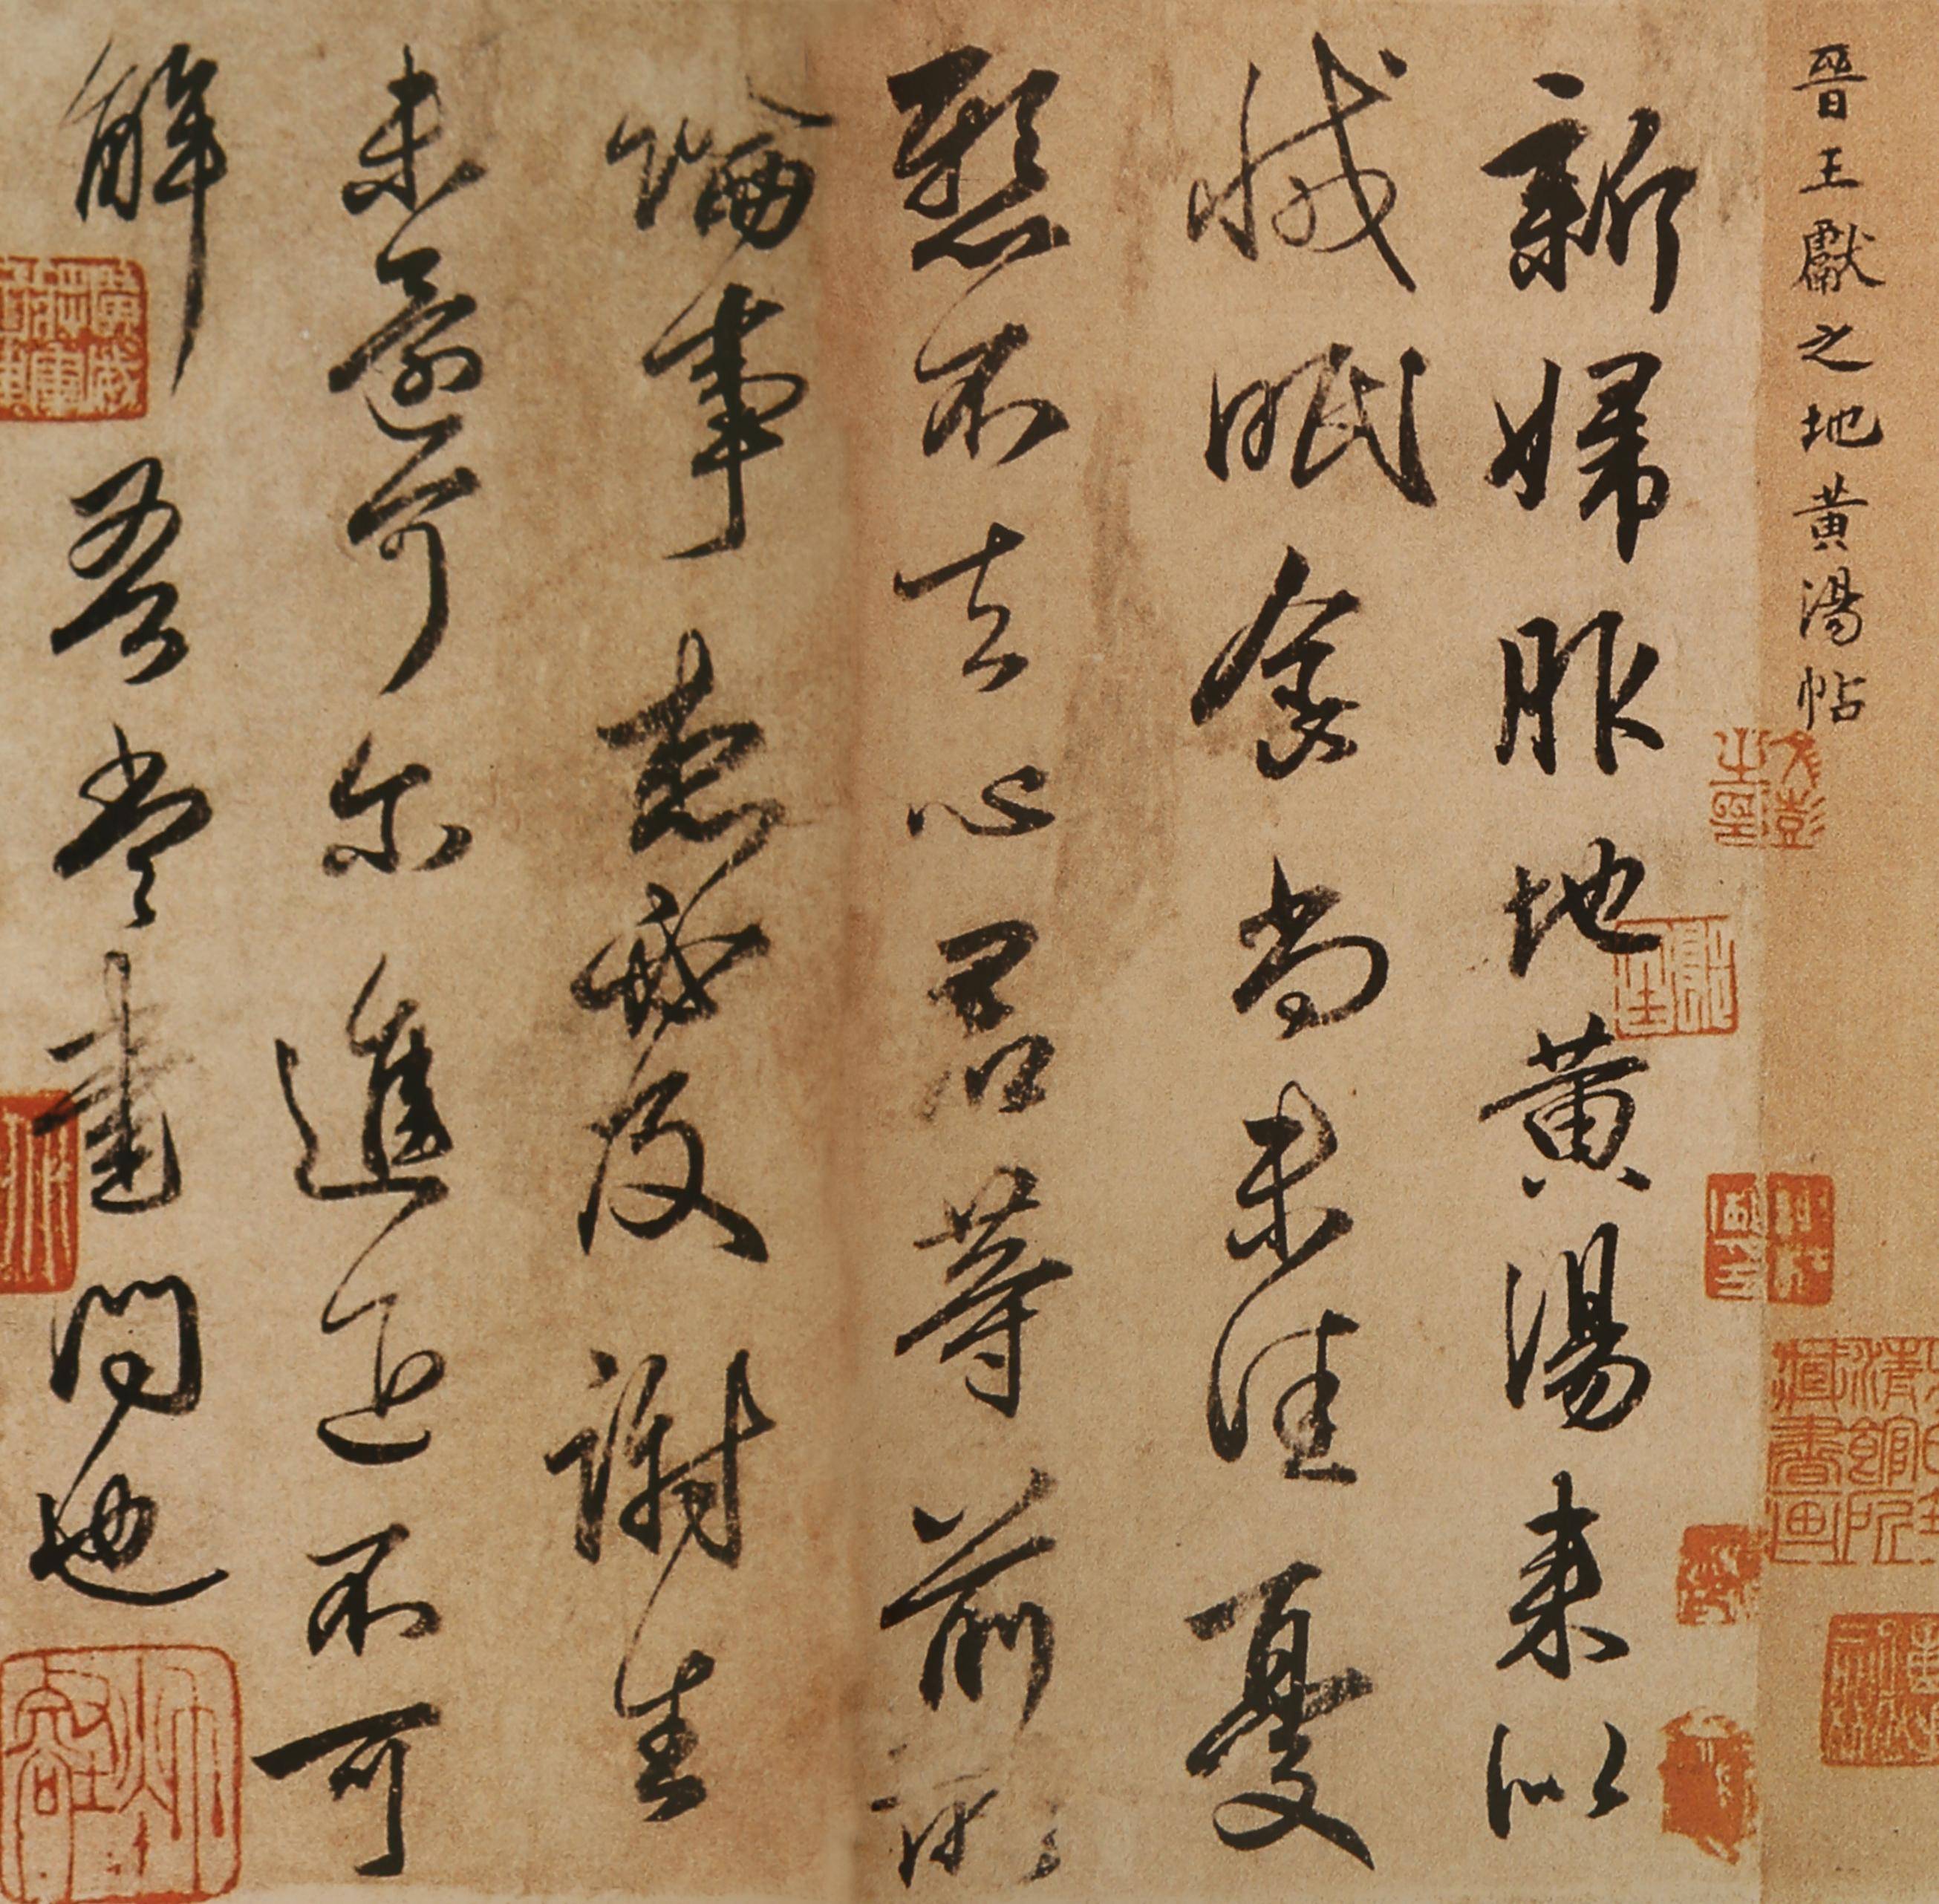 从王羲之到王献之:中国书法经典的跨越式发展